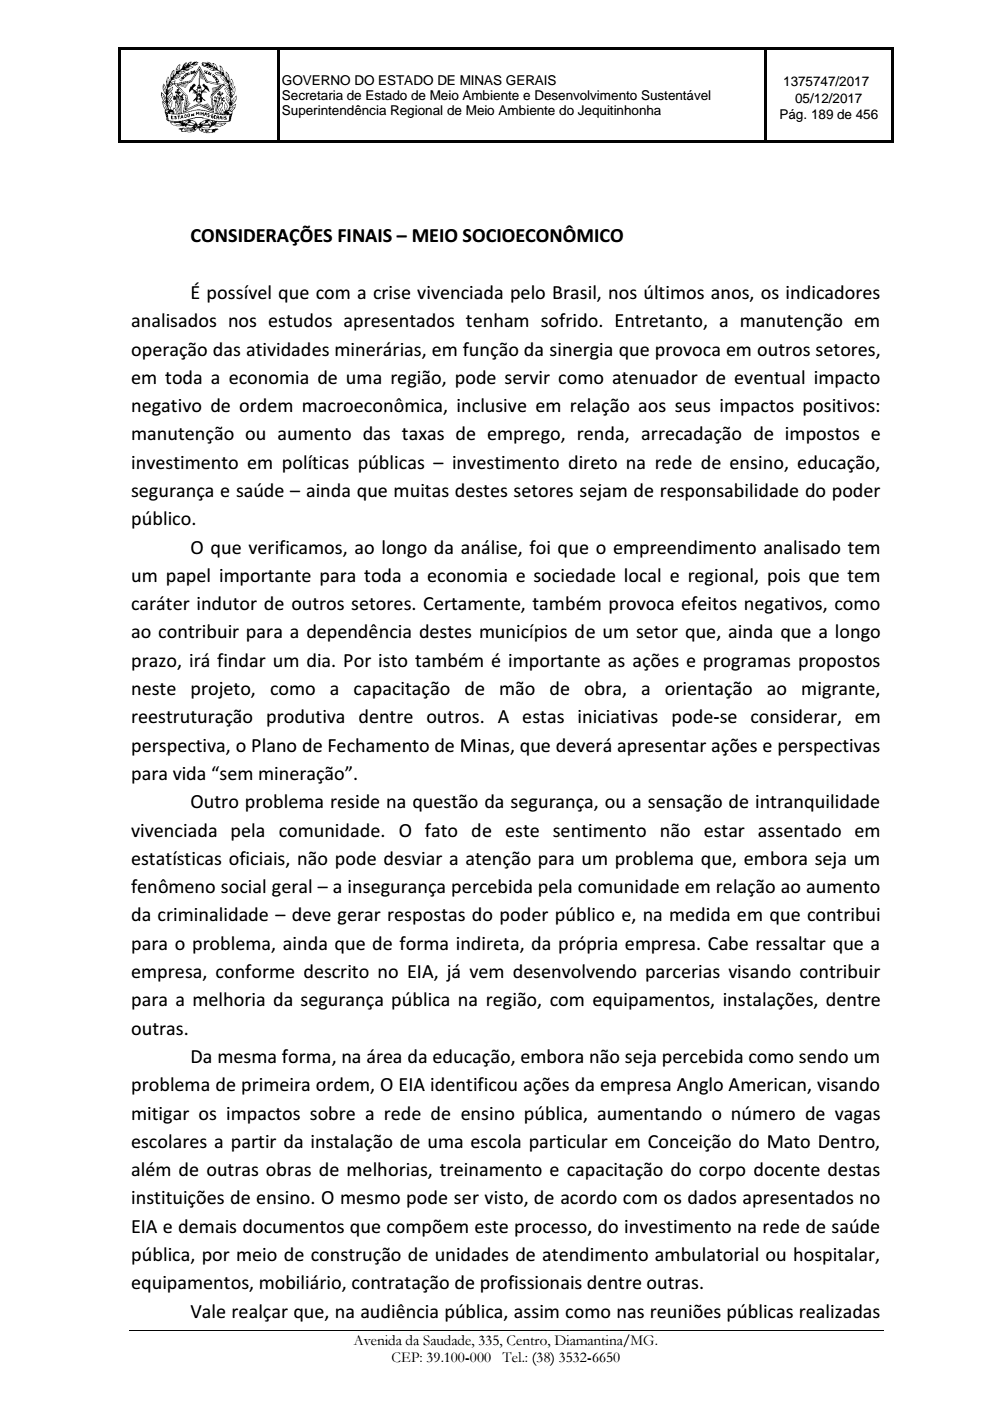 Page 189 from Parecer único da Secretaria de estado de Meio Ambiente e Desenvolvimento Sustentável (SEMAD)